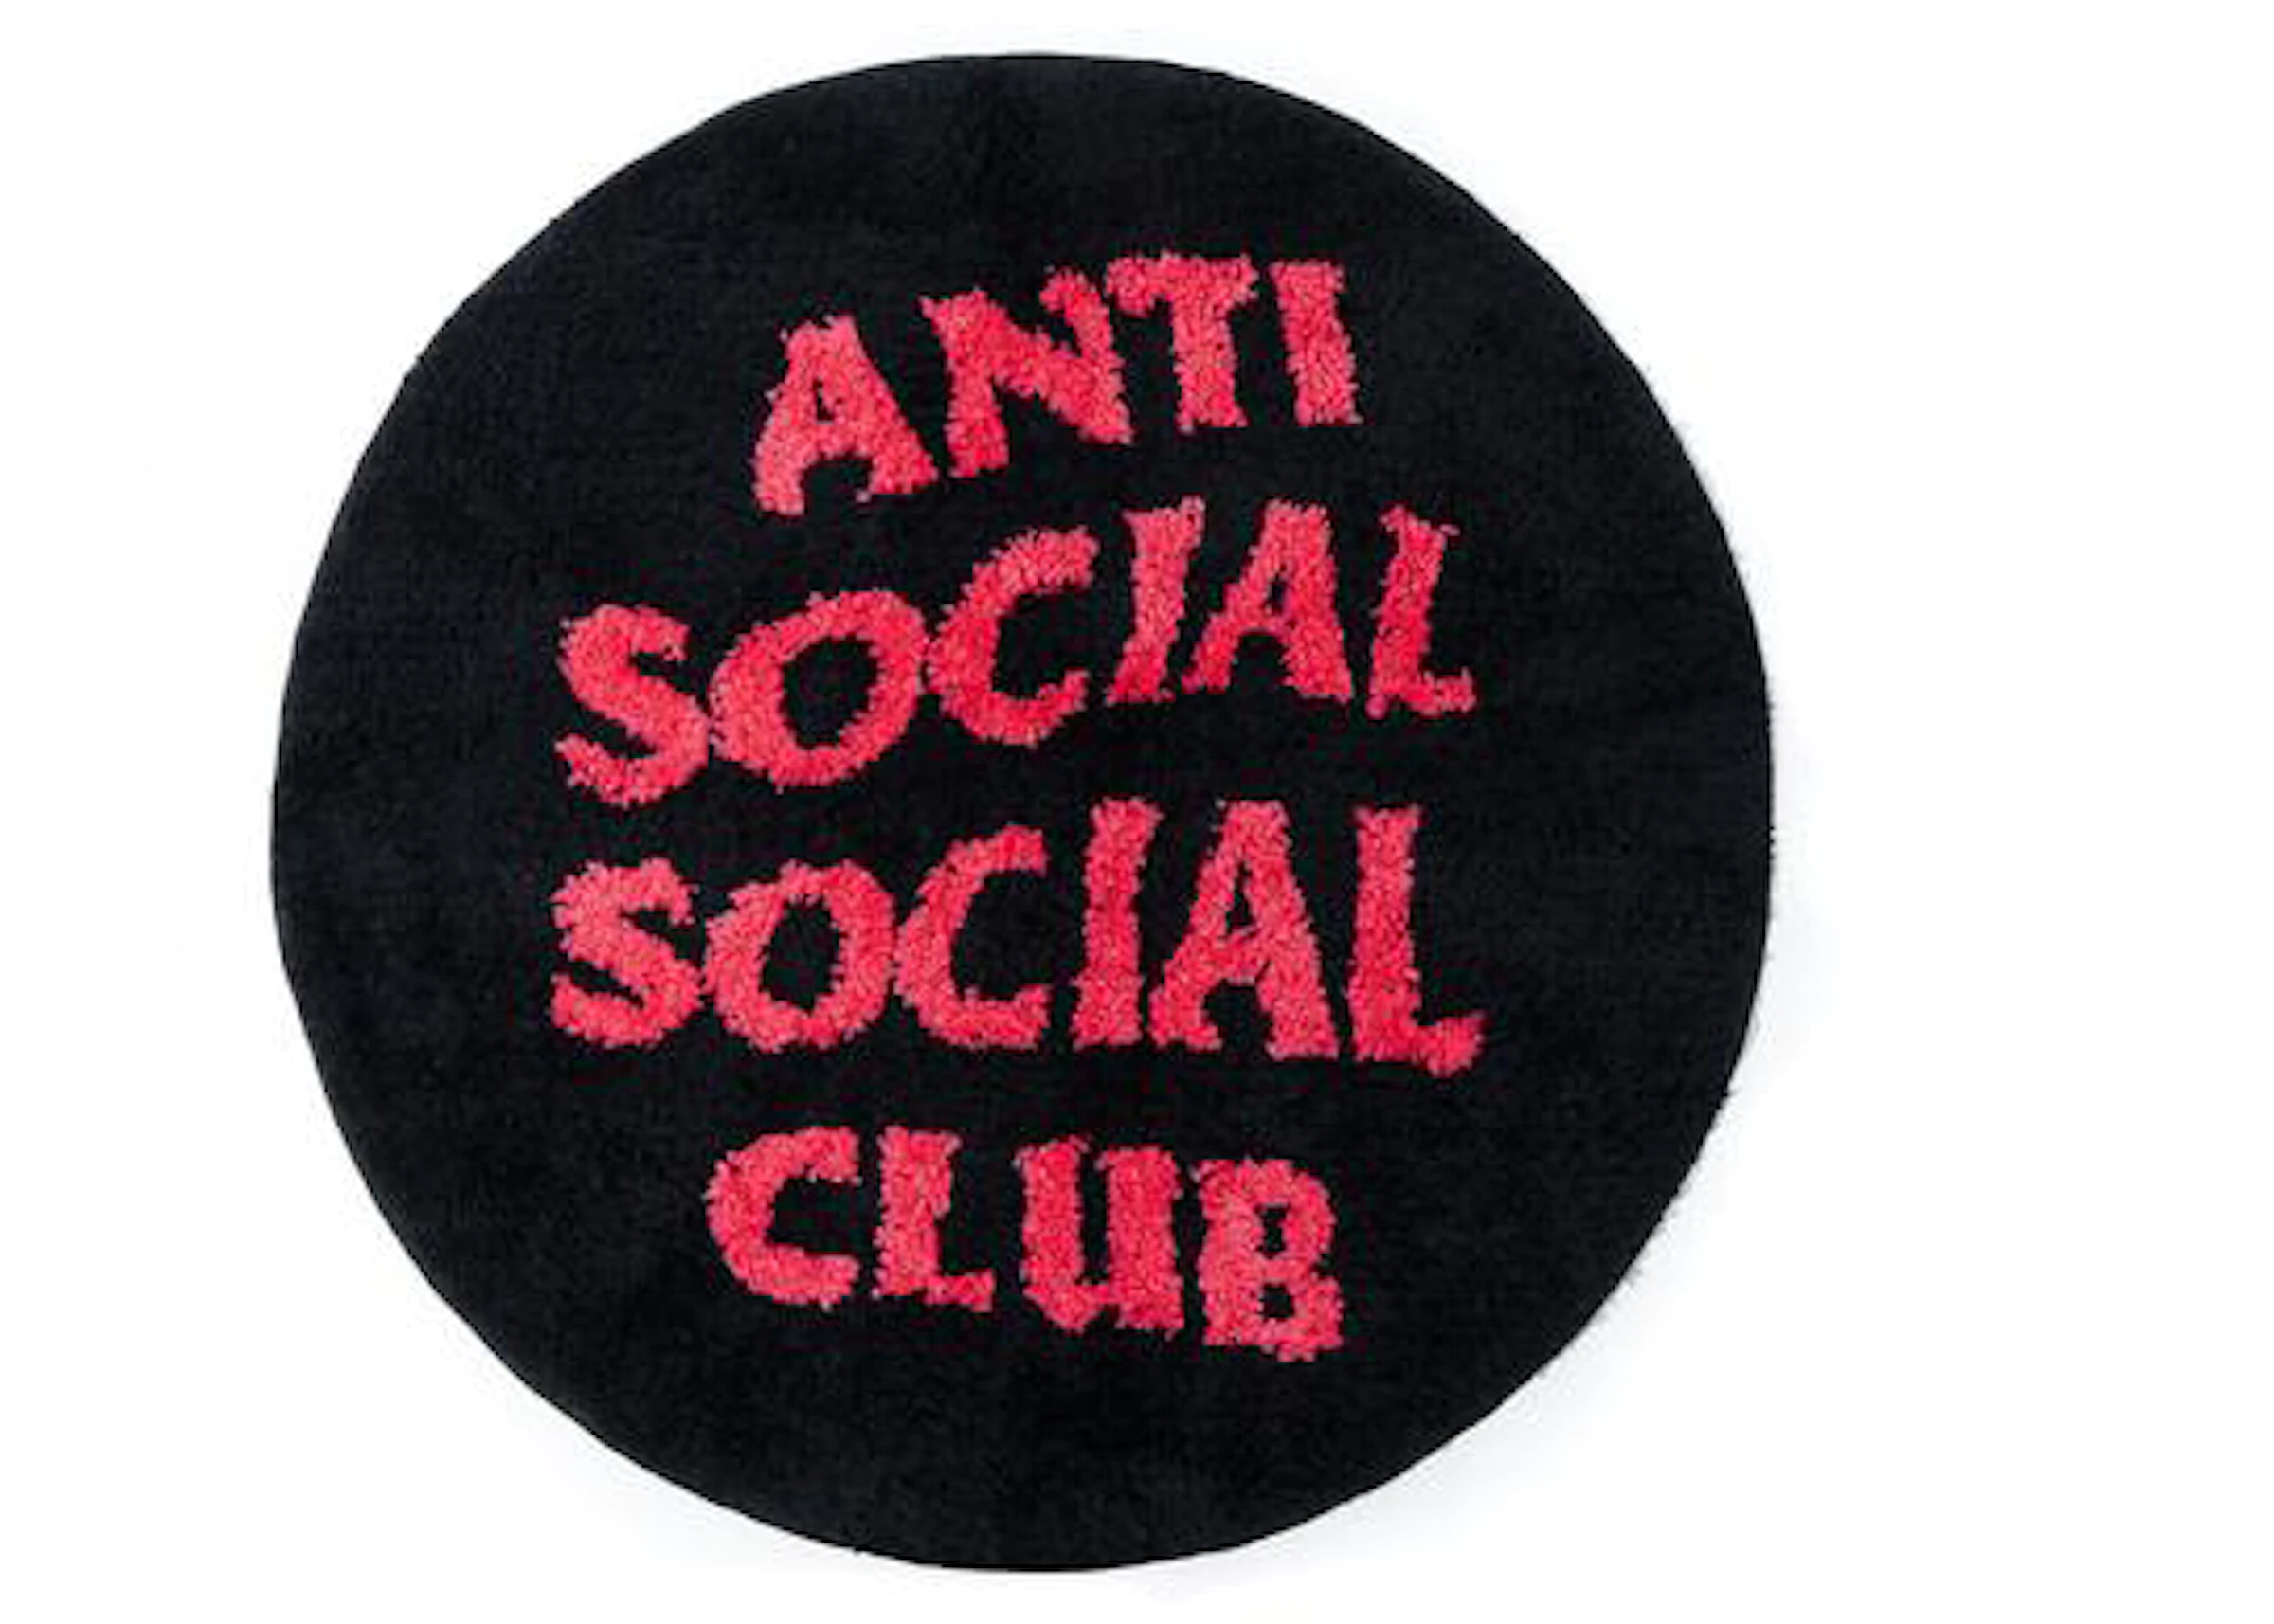 Anti Social Social Club No Shoes Inside Rug Black